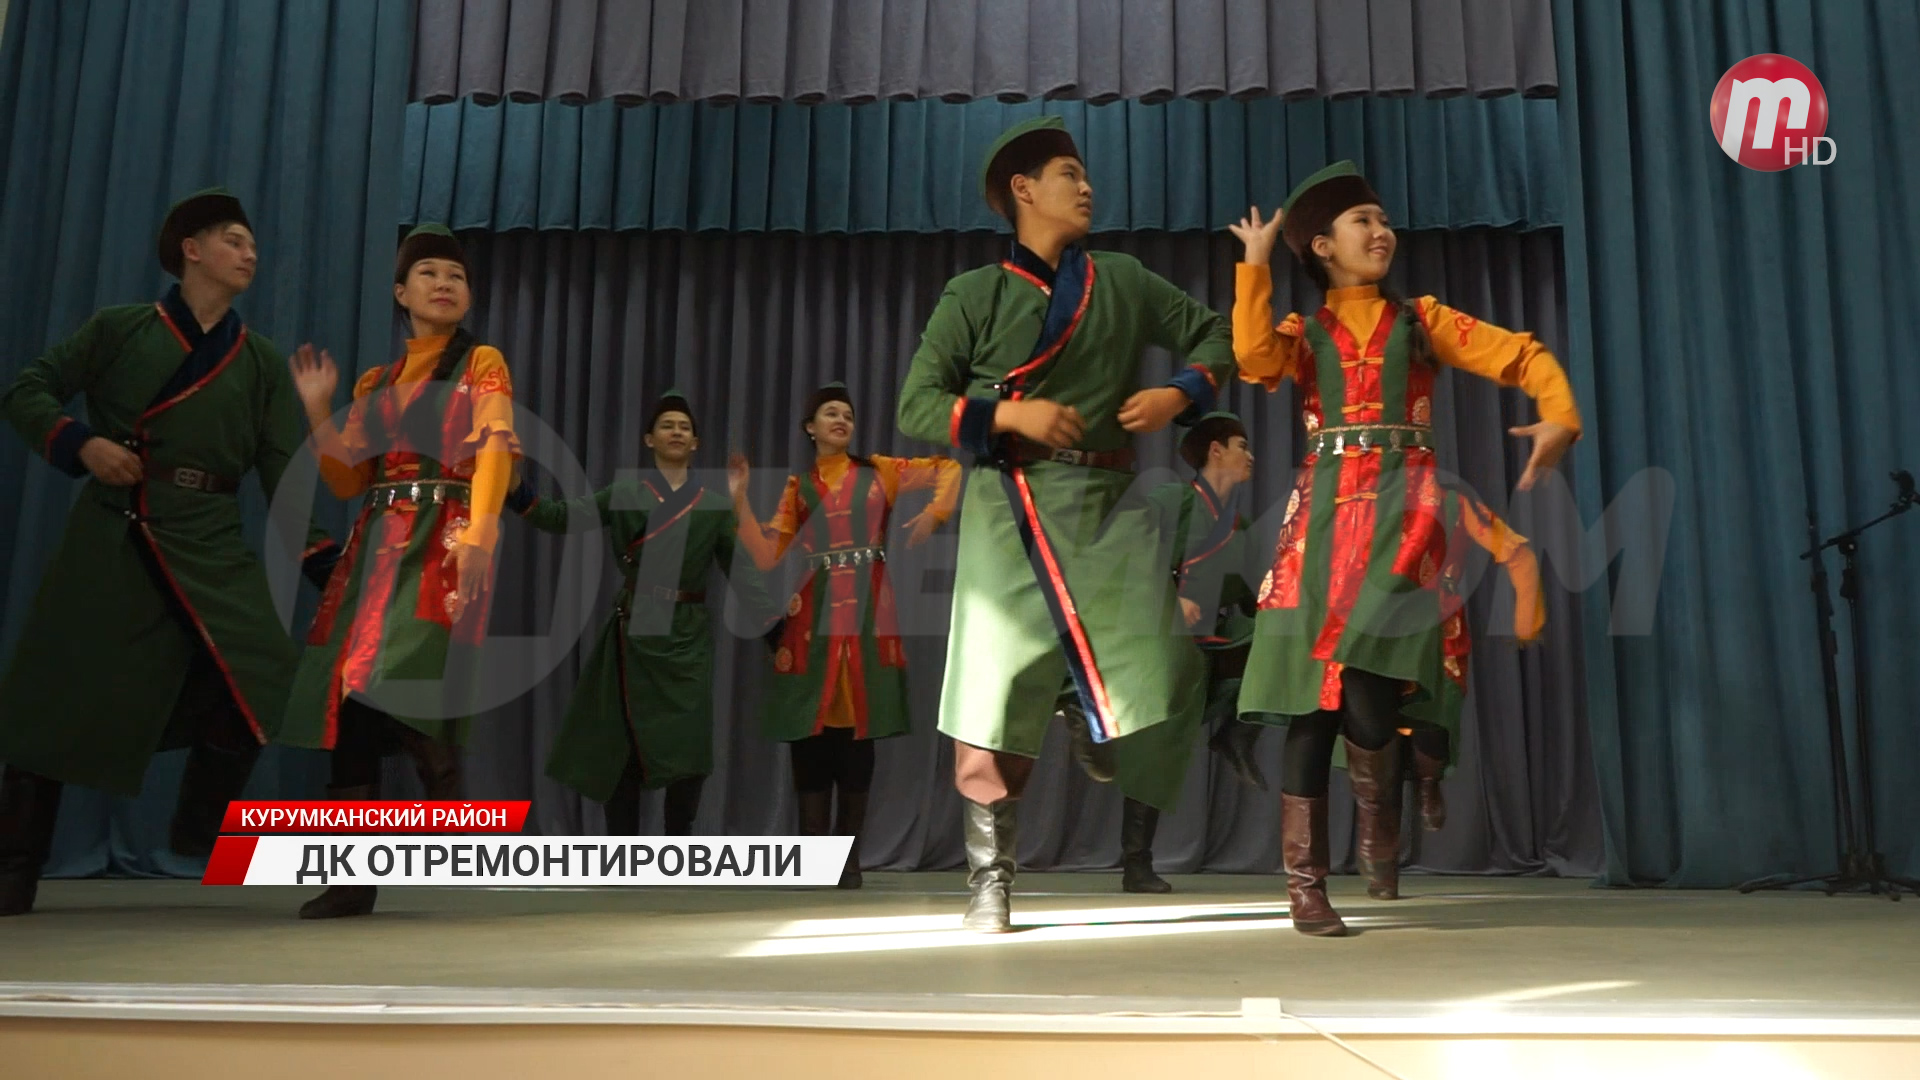 В Курумканском районе Бурятии открыли дом культуры после ремонта